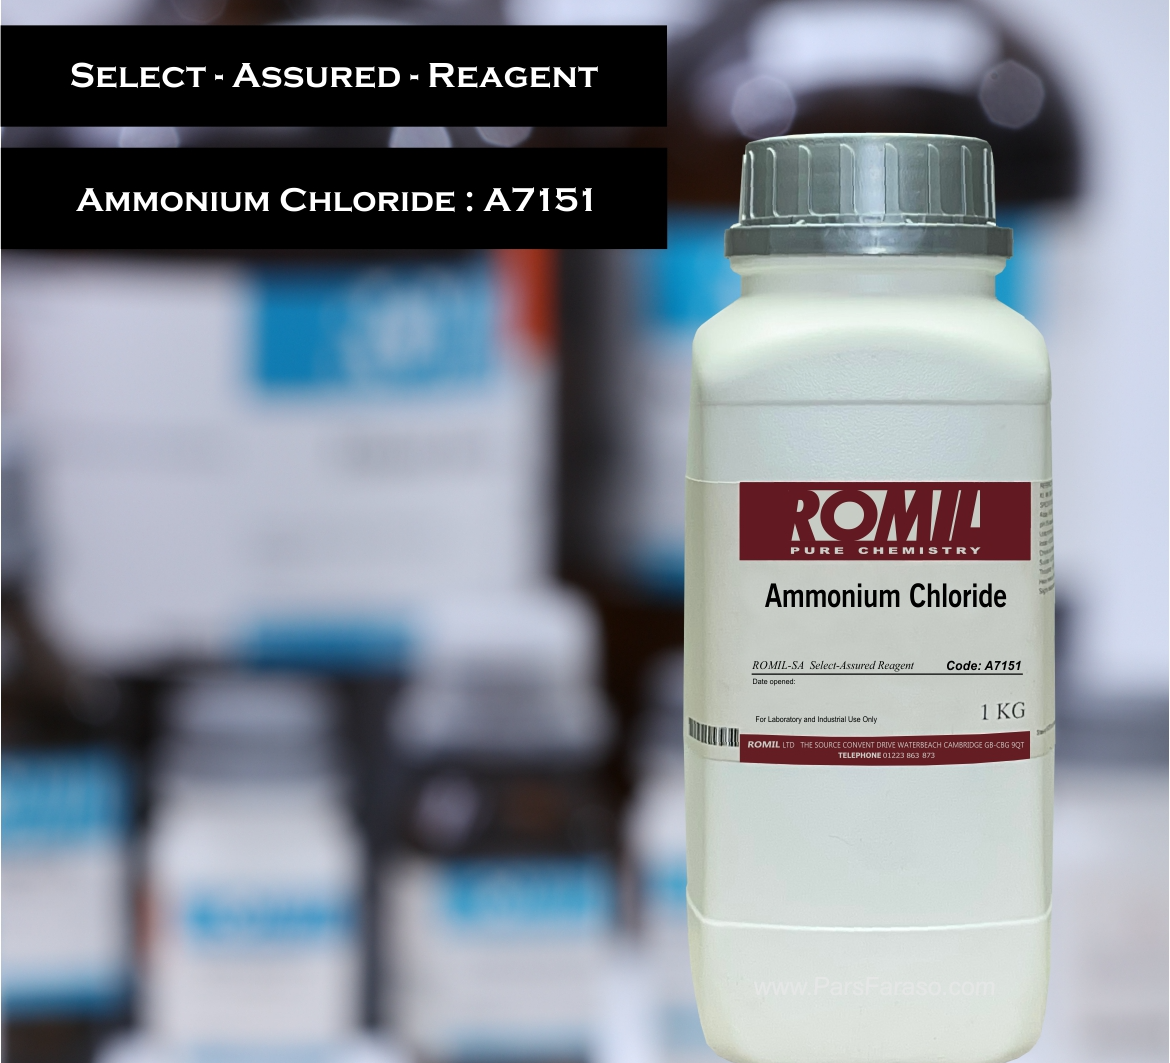 آمونیوم کلرید کد کاتالوگ روميل A7151  - خرید و فروش مواد شیمیایی